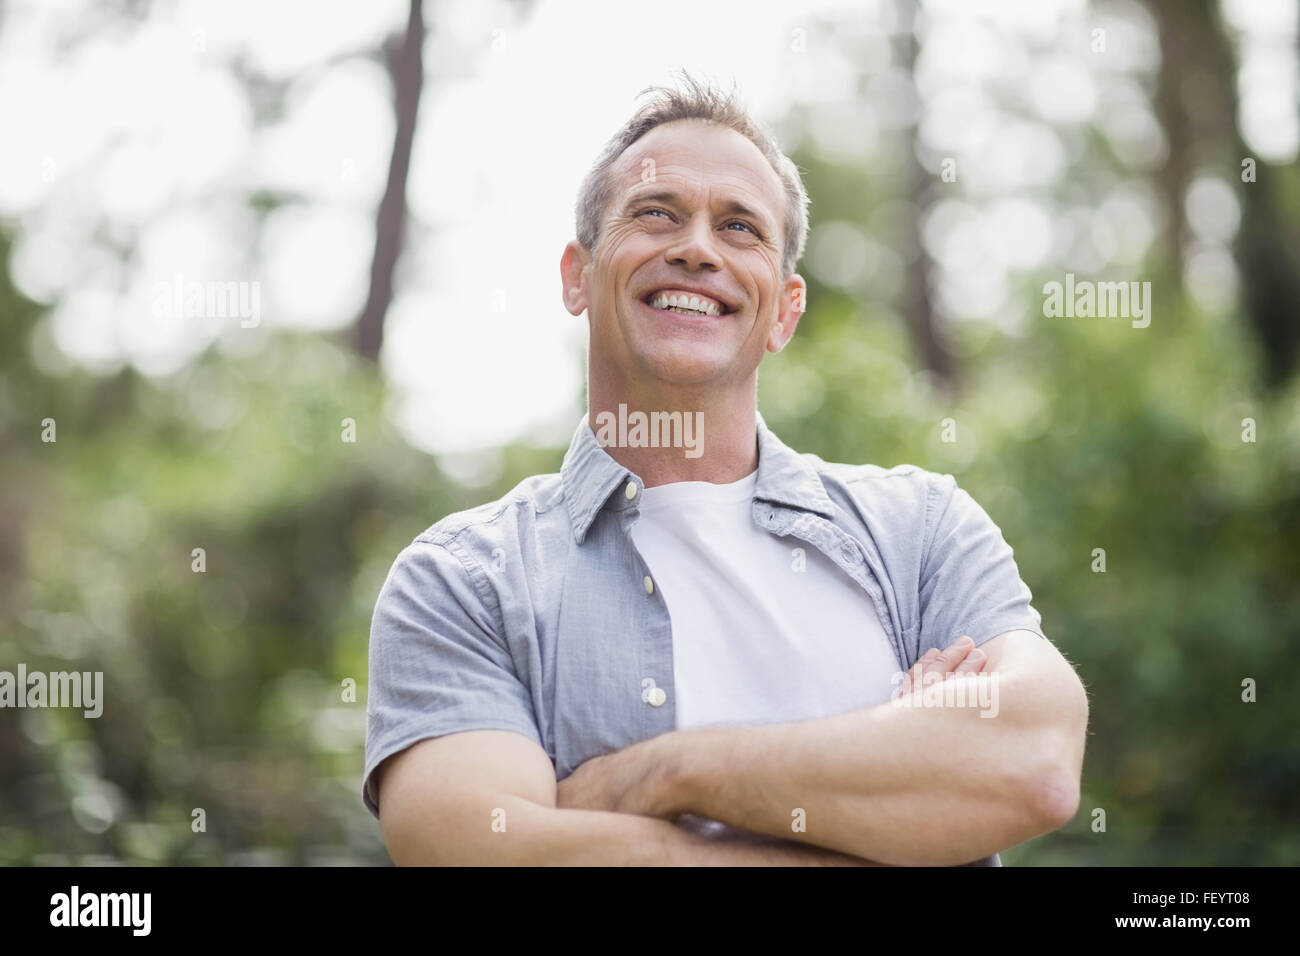 Lächelnder Mann seine Arme kreuzen Stockfoto